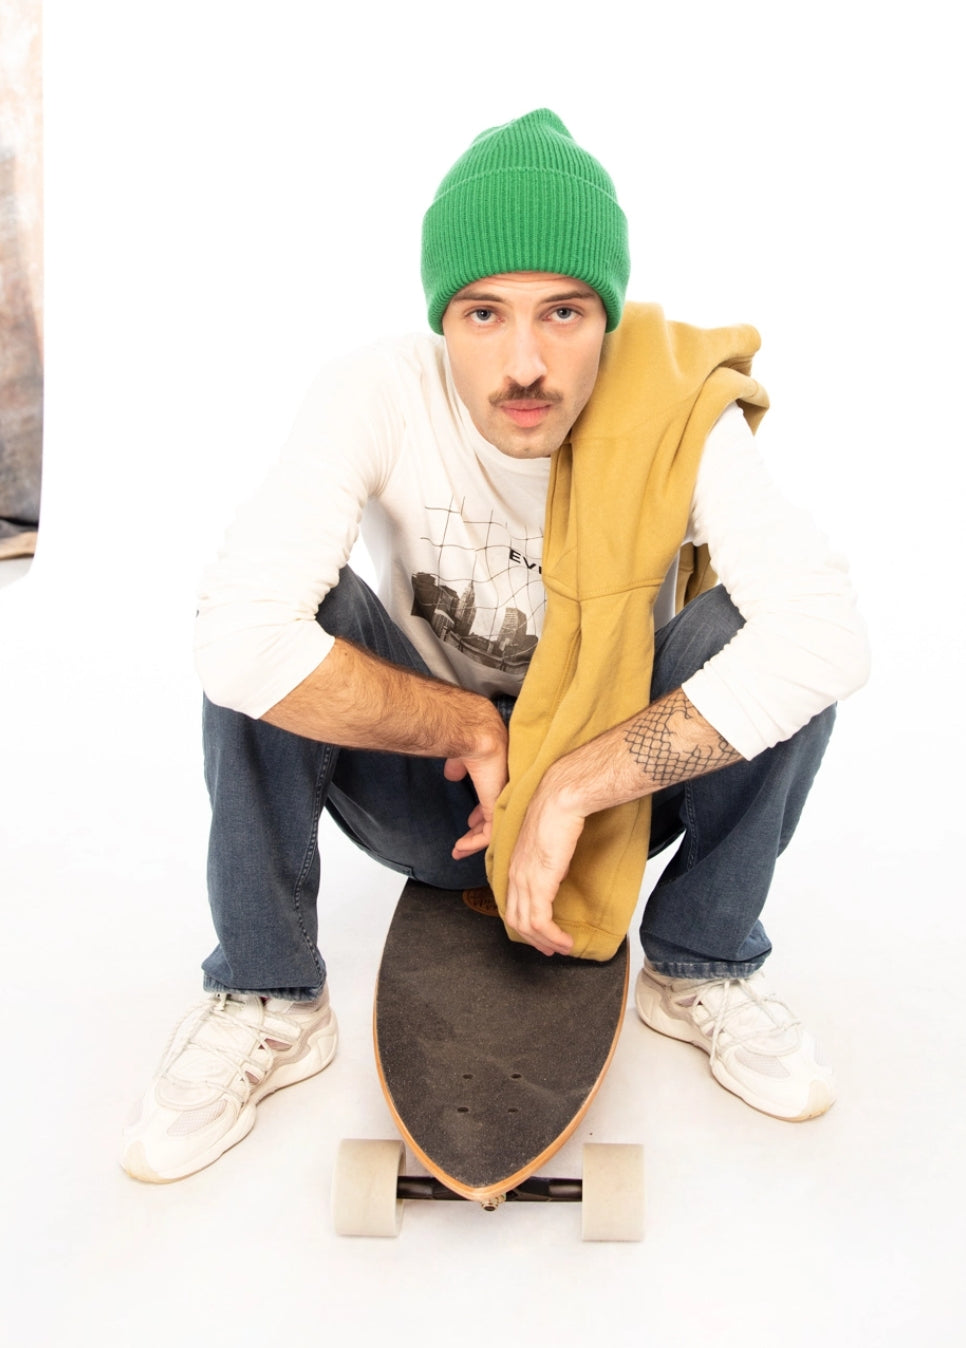 LOSAN - Collection Casual, uomo seduto su skateboard che indossa un berretto verde sudore bianco e una felpa con cappuccio gialla sulla spalla